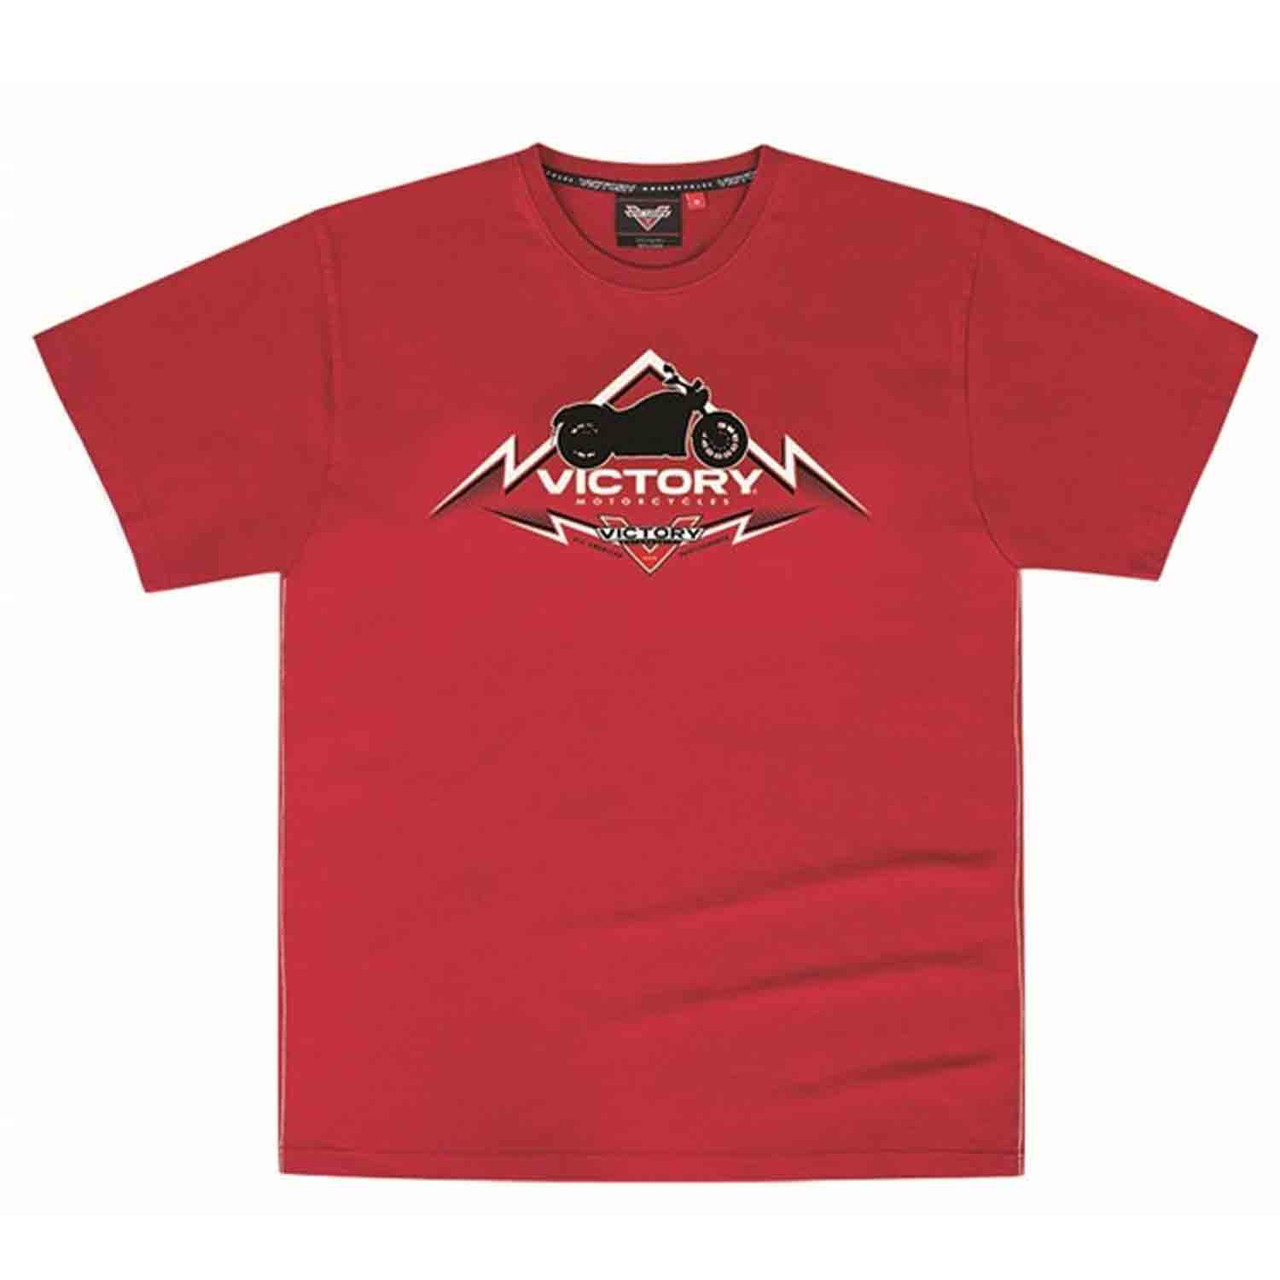 Victory Motorcycle New OEM Men's Red Peak Logo Tee Shirt, Small, 286798002